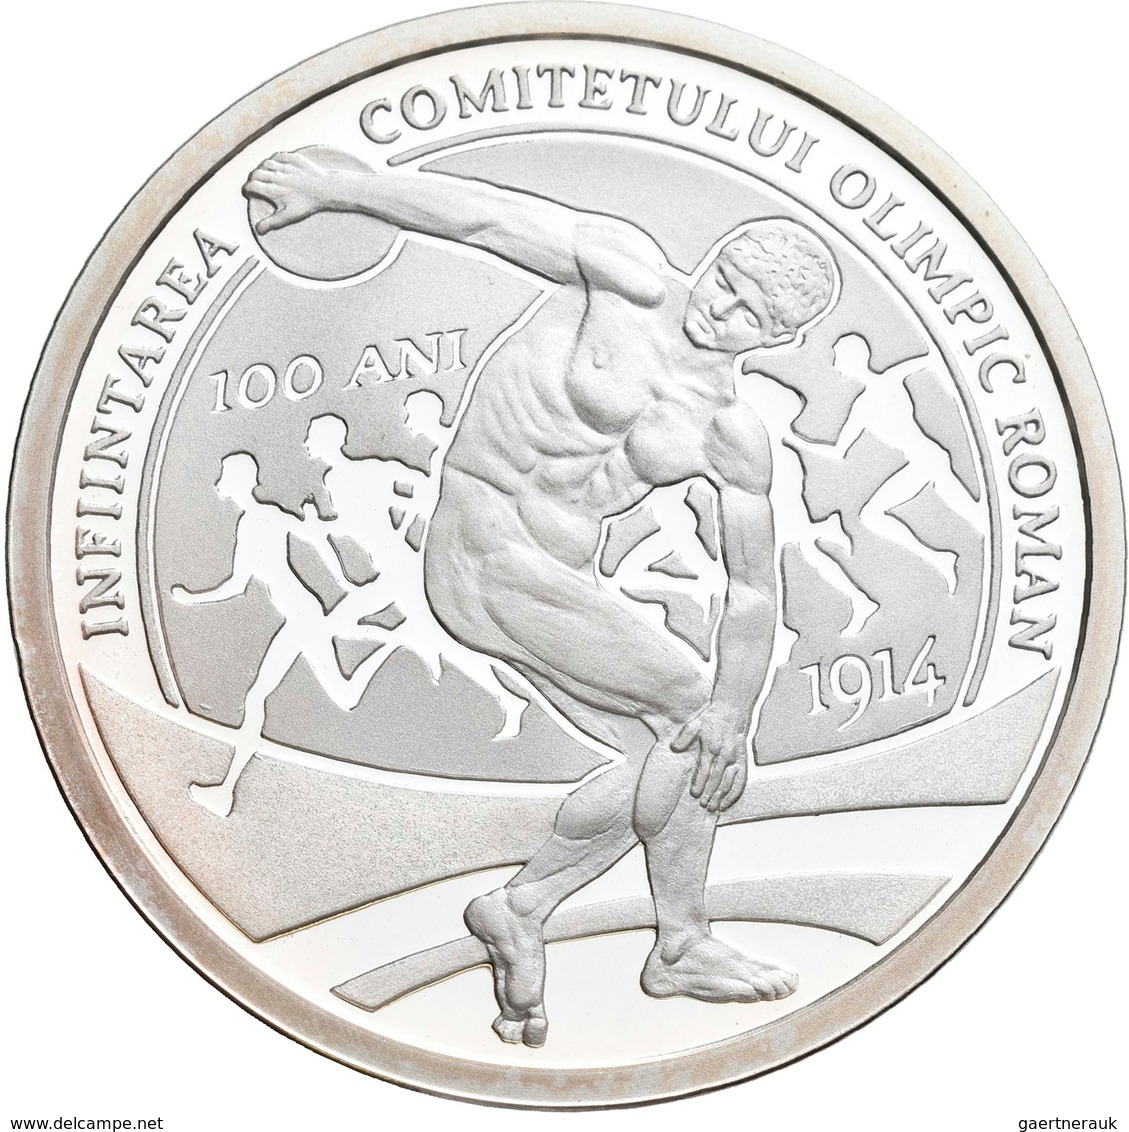 Rumänien: 10 Lei 2014, 100 Jahre Rumänisches Olympisches Kommitee. KM# N.b. 31,103 G (1 OZ), 999/100 - Roemenië